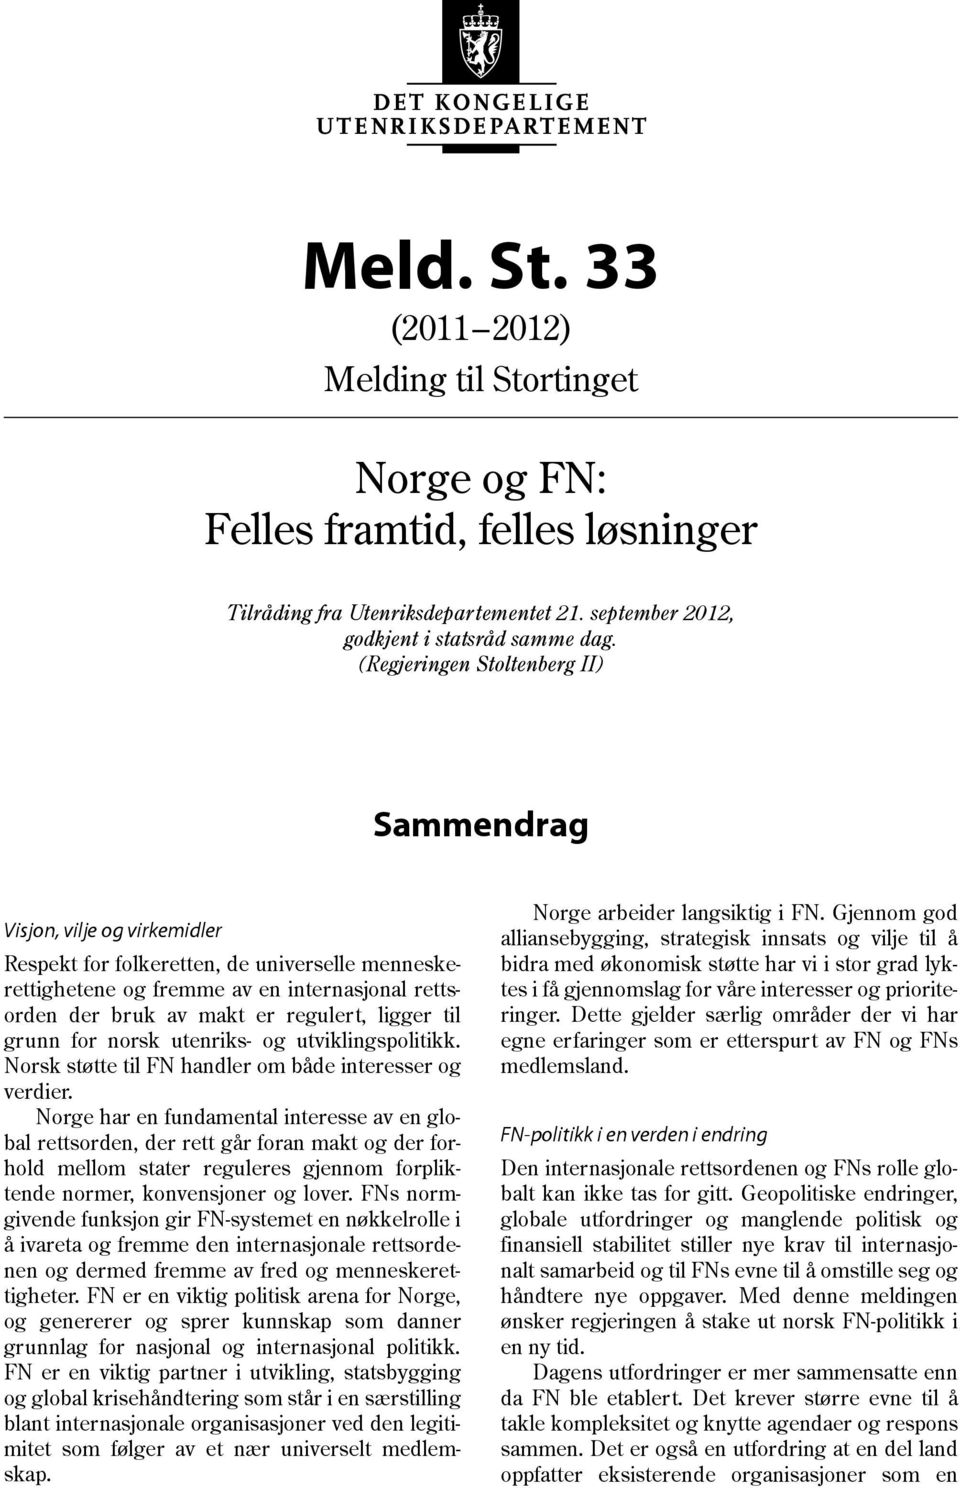 regulert, ligger til grunn for norsk utenriks- og utviklingspolitikk. Norsk støtte til FN handler om både interesser og verdier.